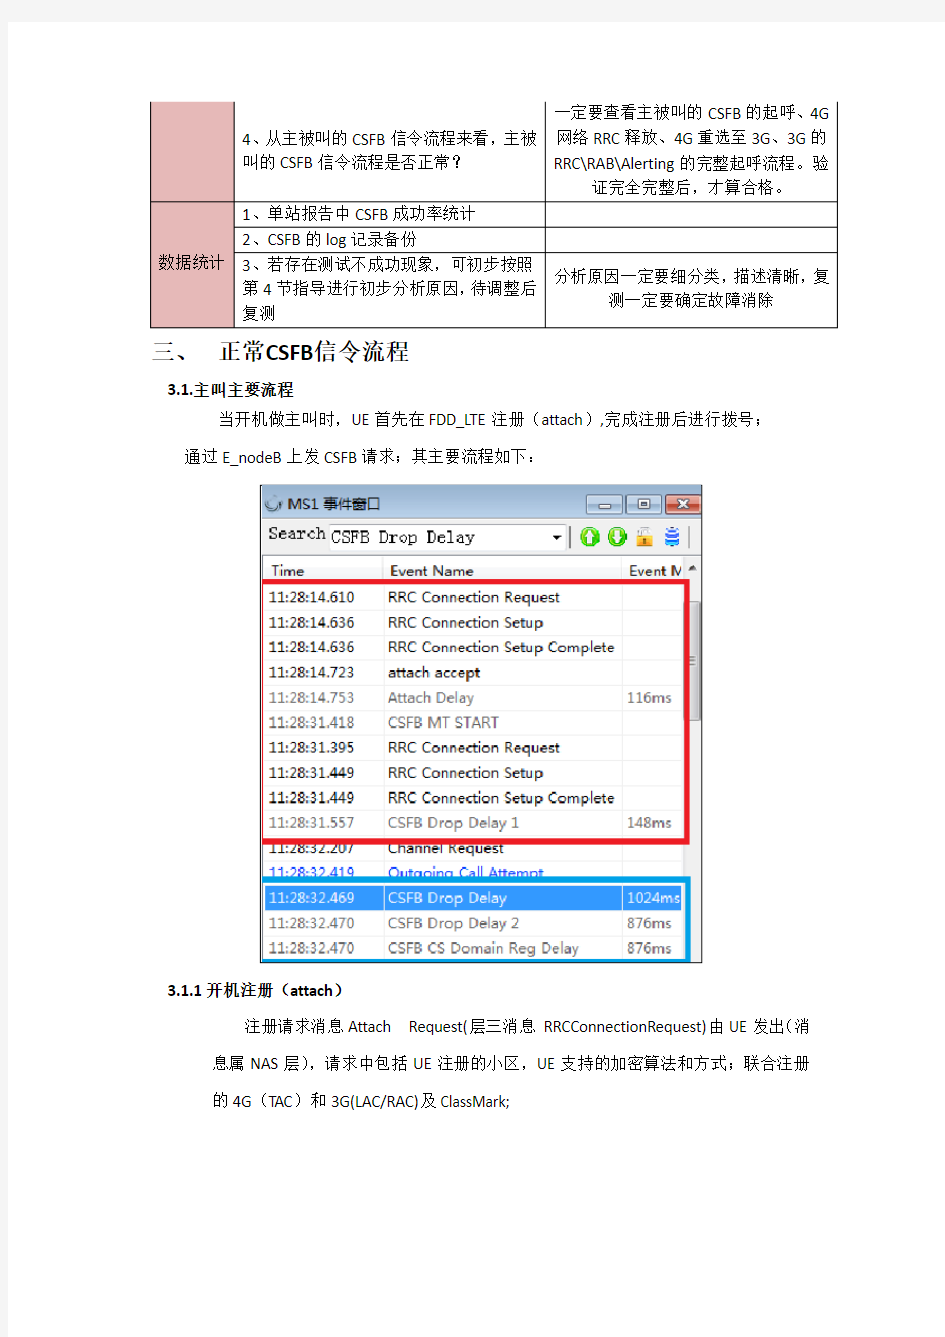 中国联通CSFB测试和主要流程信令